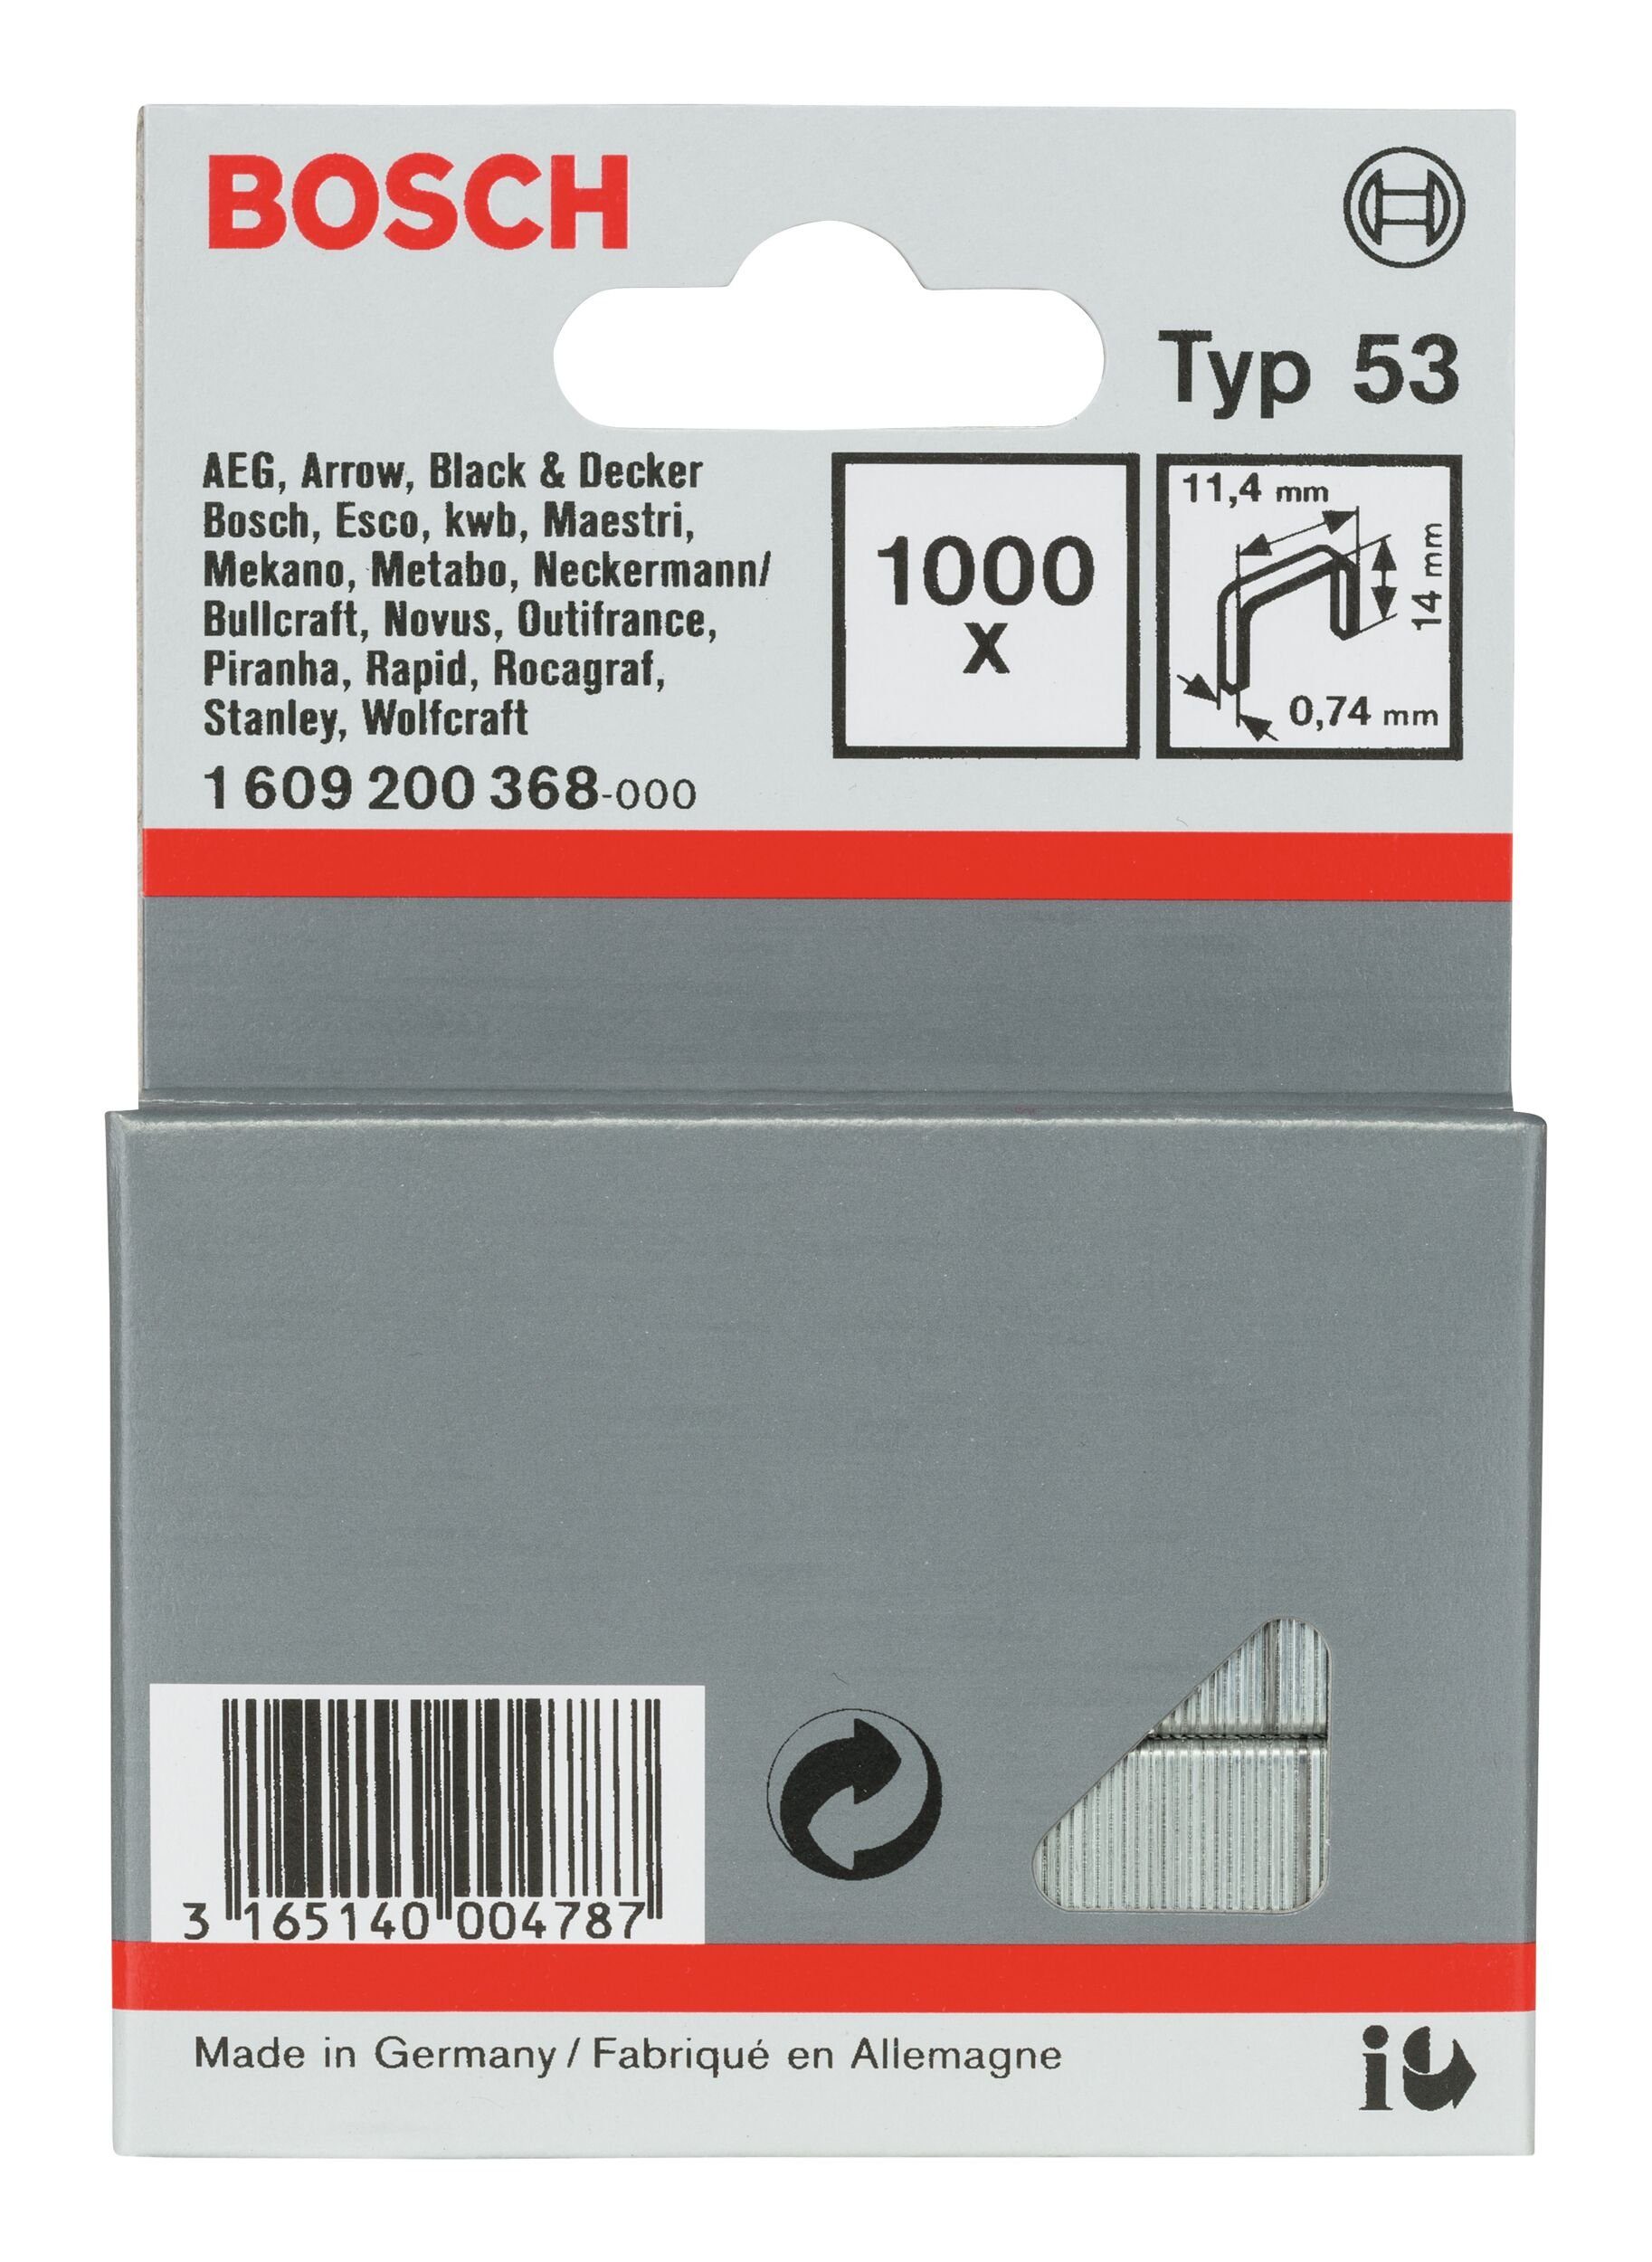 BOSCH Tackerklammer, Typ 53 Feindrahtklammer - 0,74 x 14 x 11,4 mm - 1000er-Pack